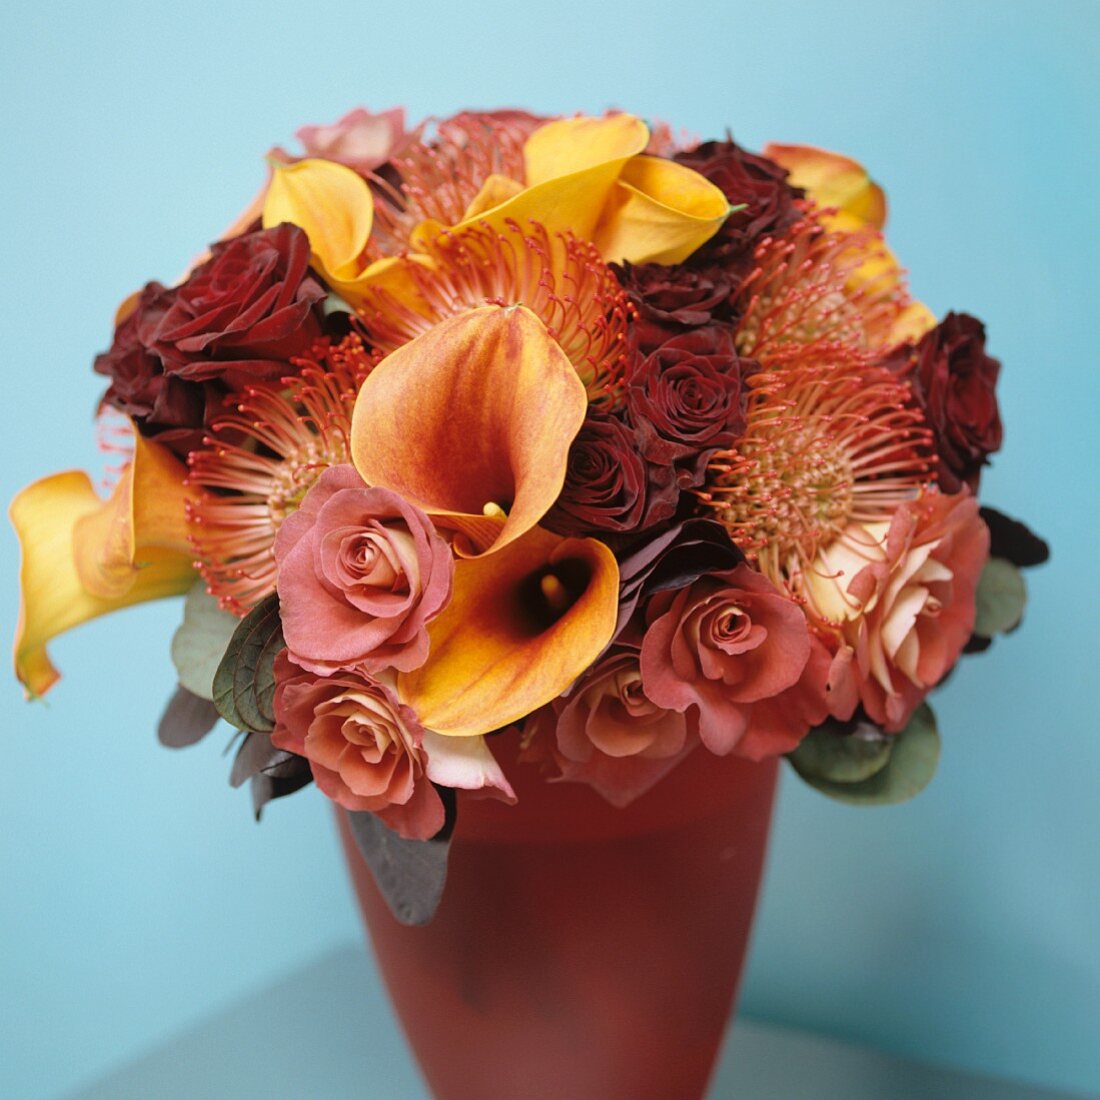 Gedeckte Rosé/Gelbtöne vor hellblauer Wand - ein kostbares Blumengebinde in farblich abgestimmter Vase